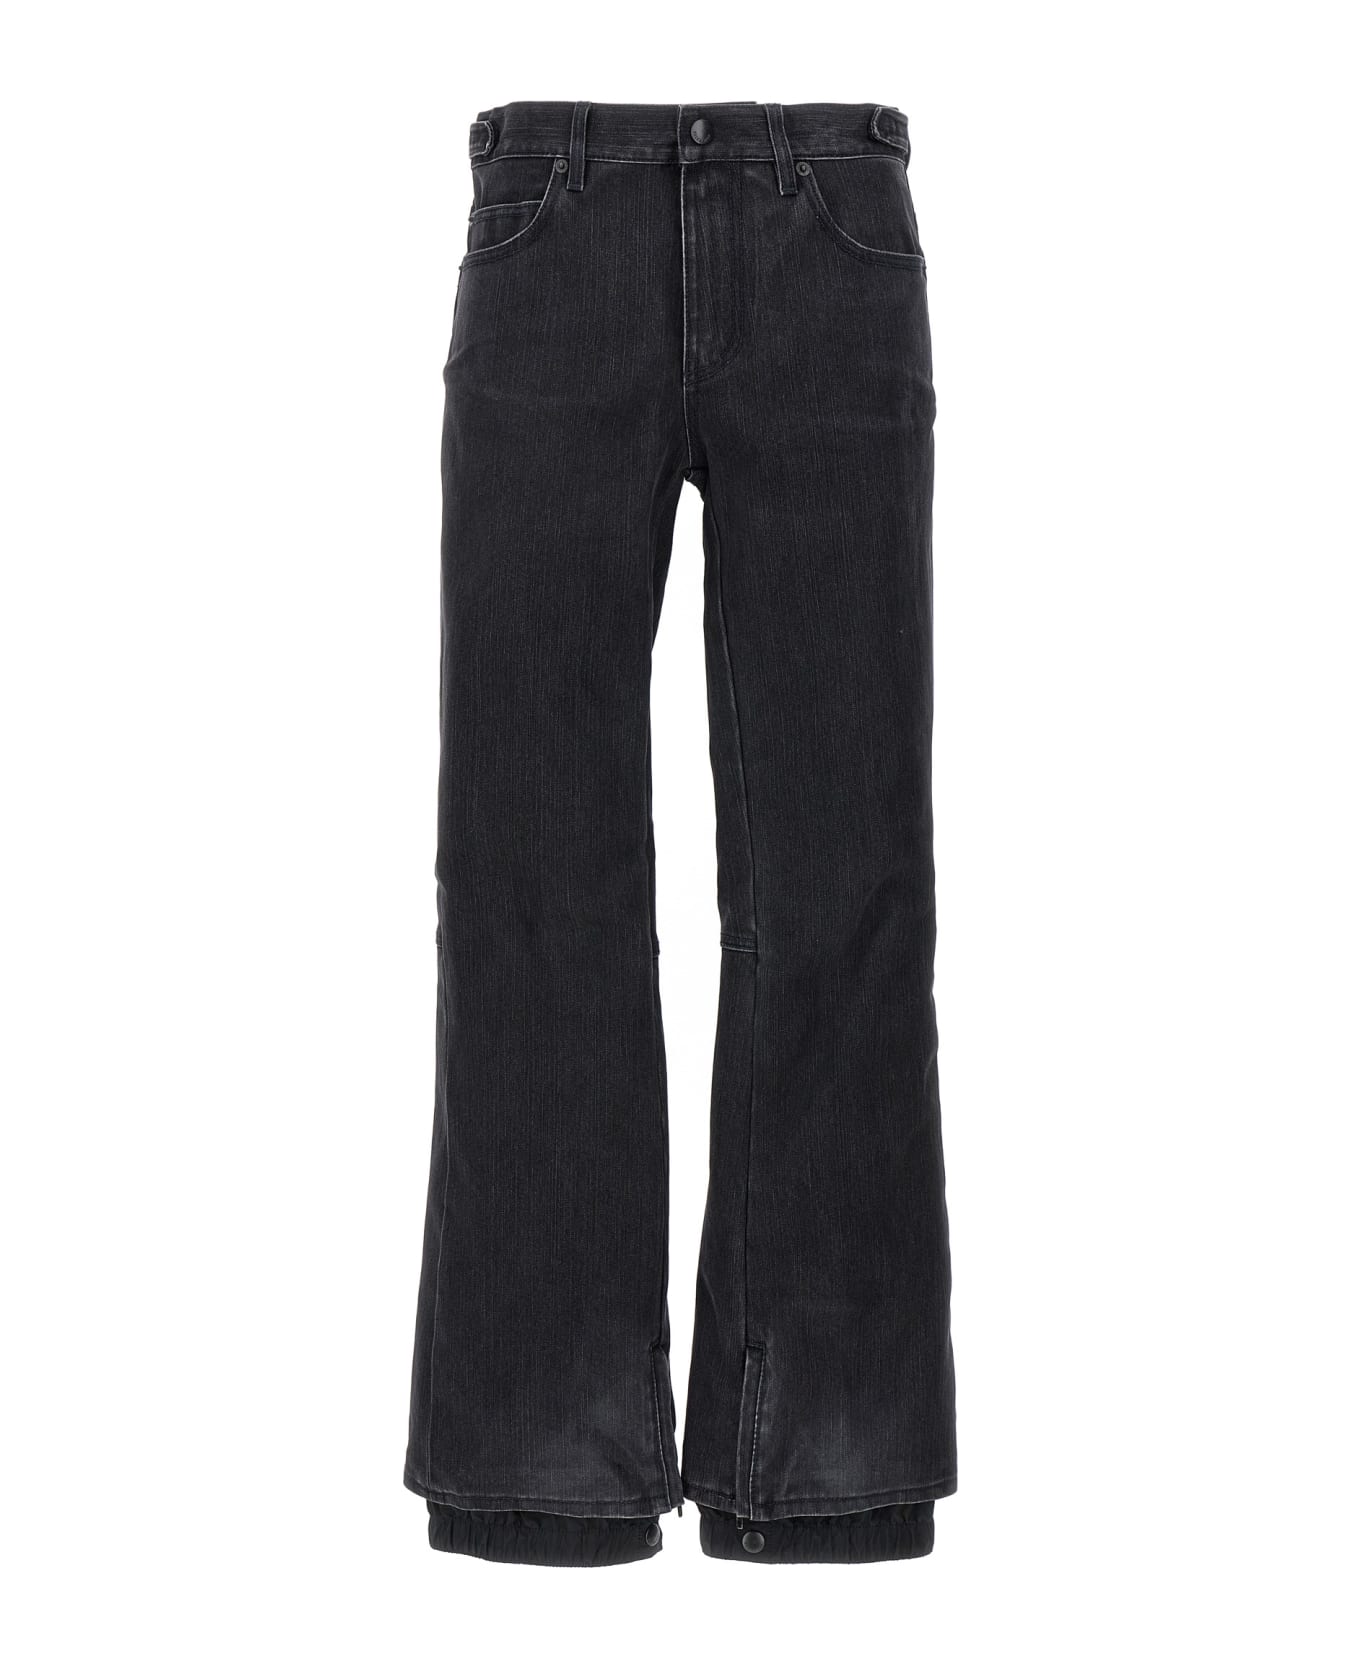 Balenciaga 'ski' Jeans - Black   デニム